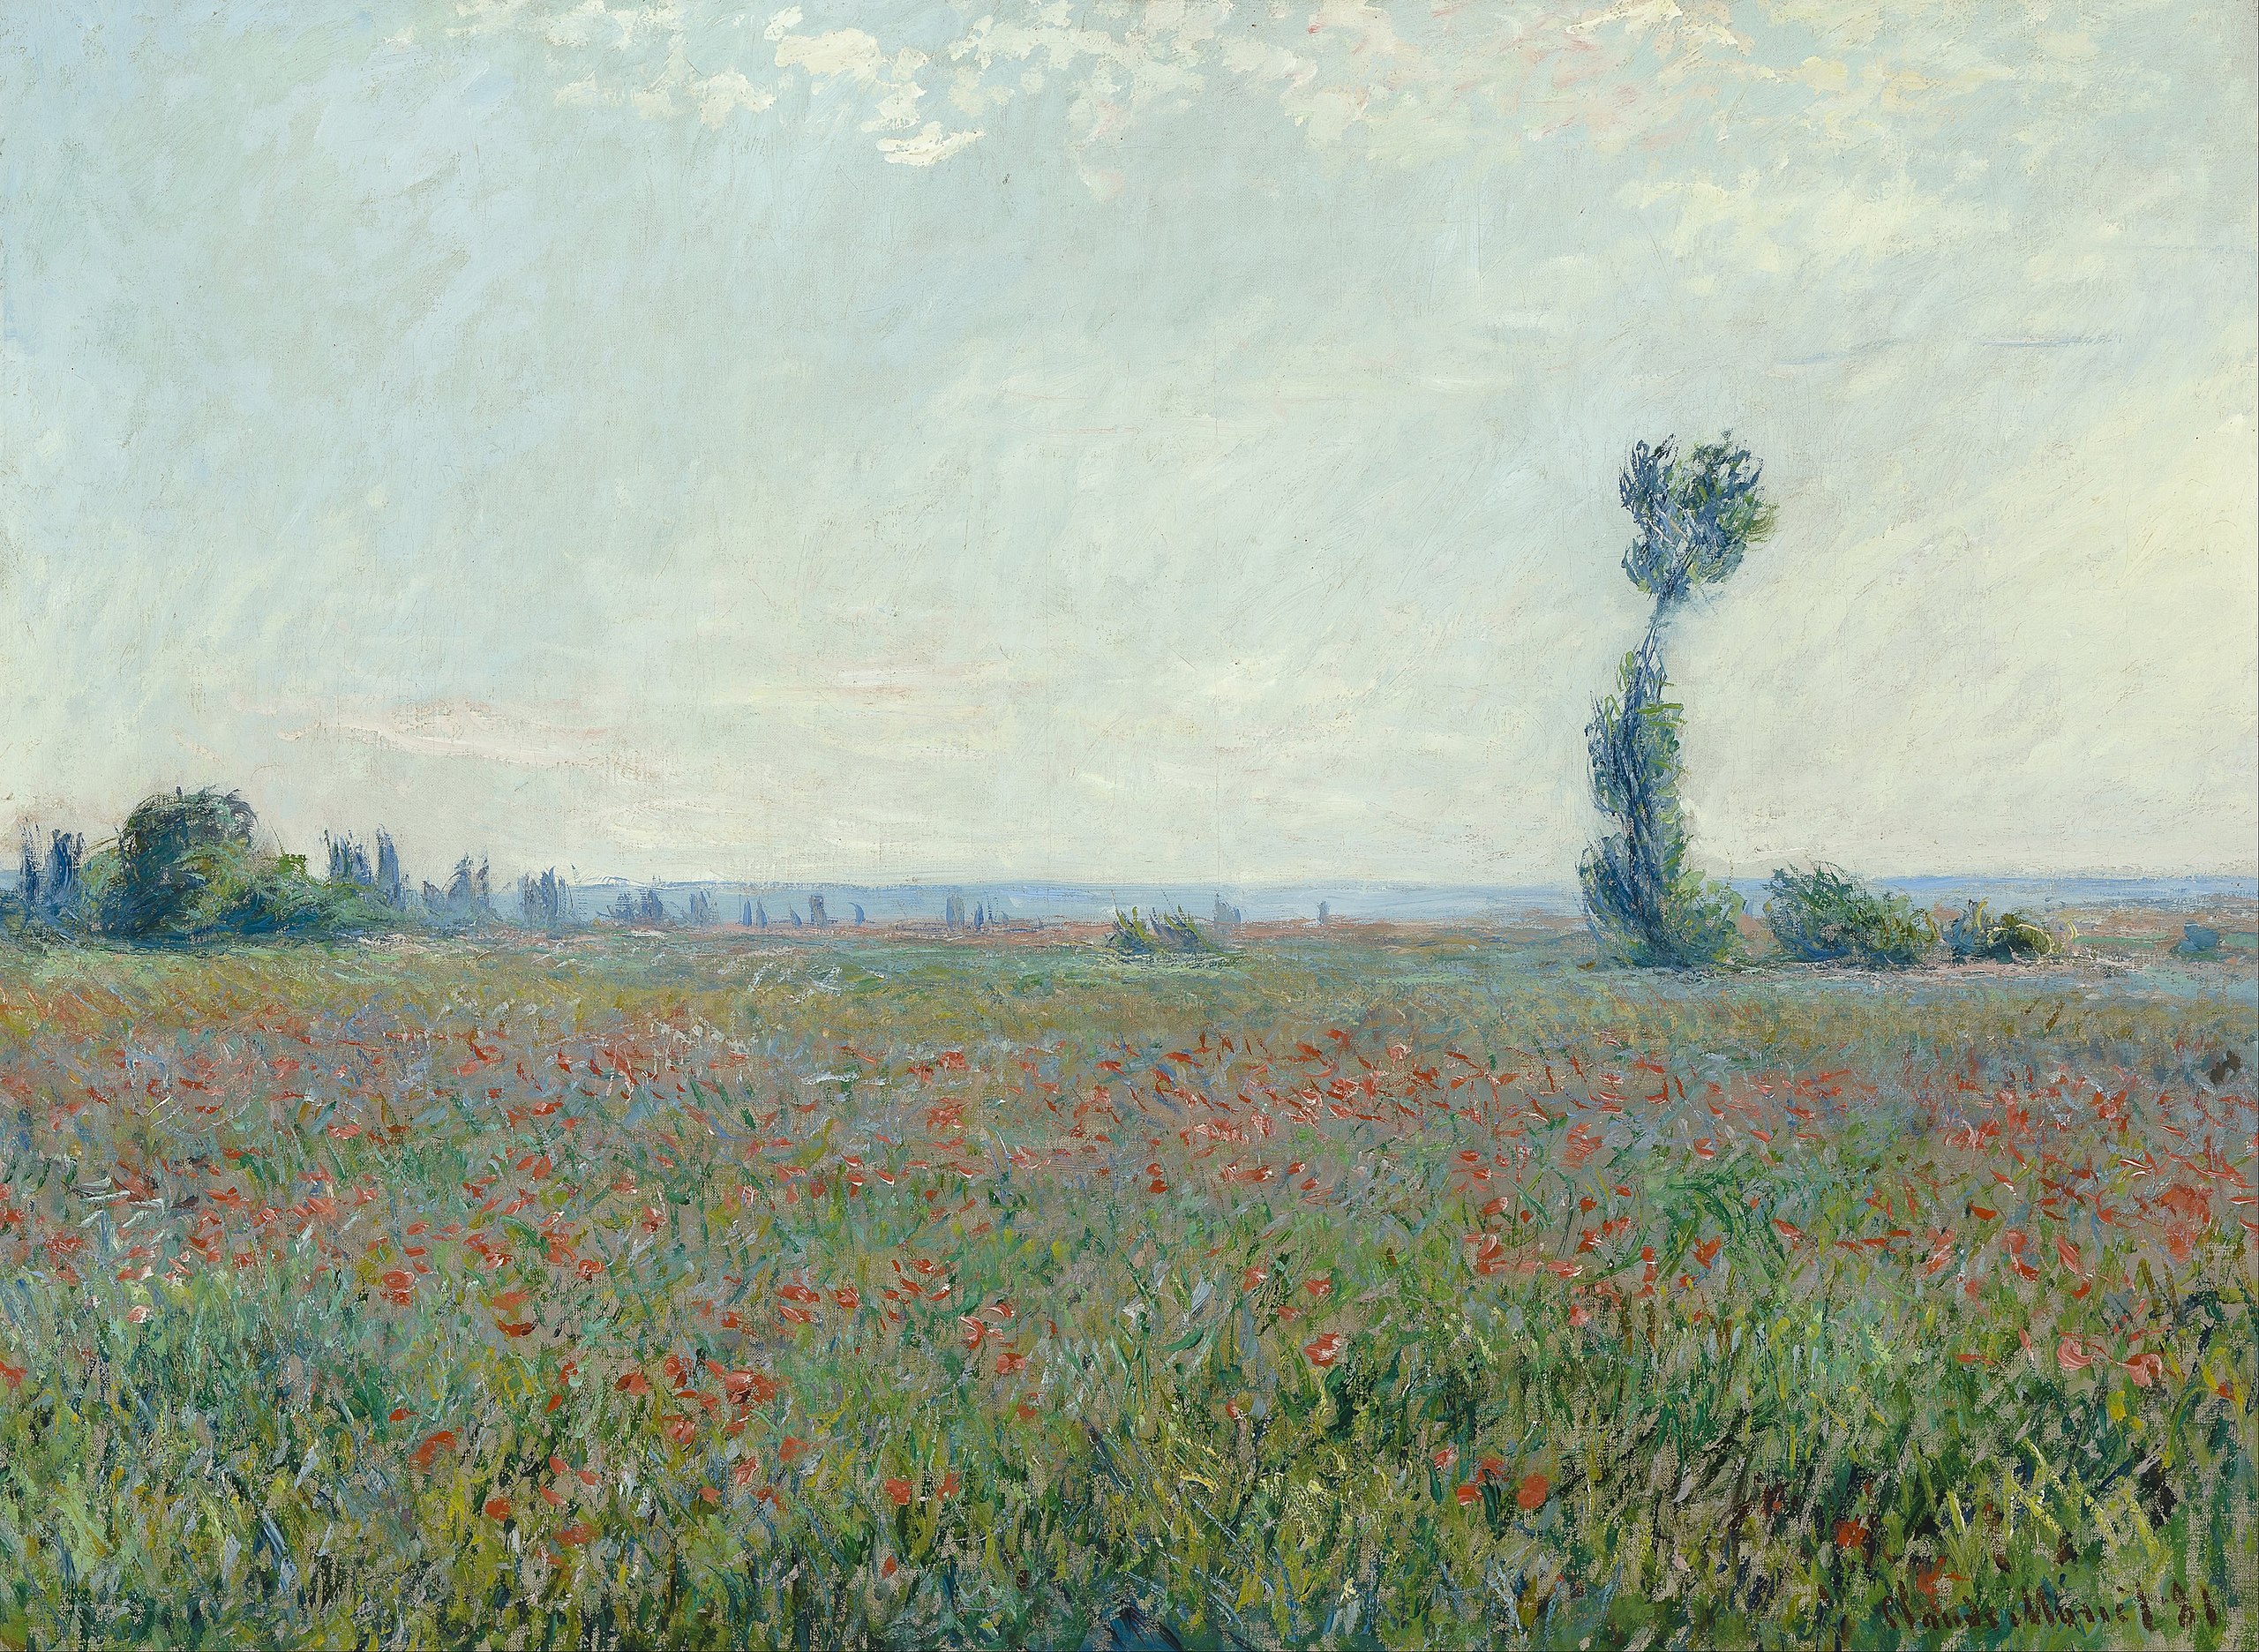 Haşhaş Tarlası (orig. "Poppy Field") by Claude Monet - 1881 - 79 x 58 cm 